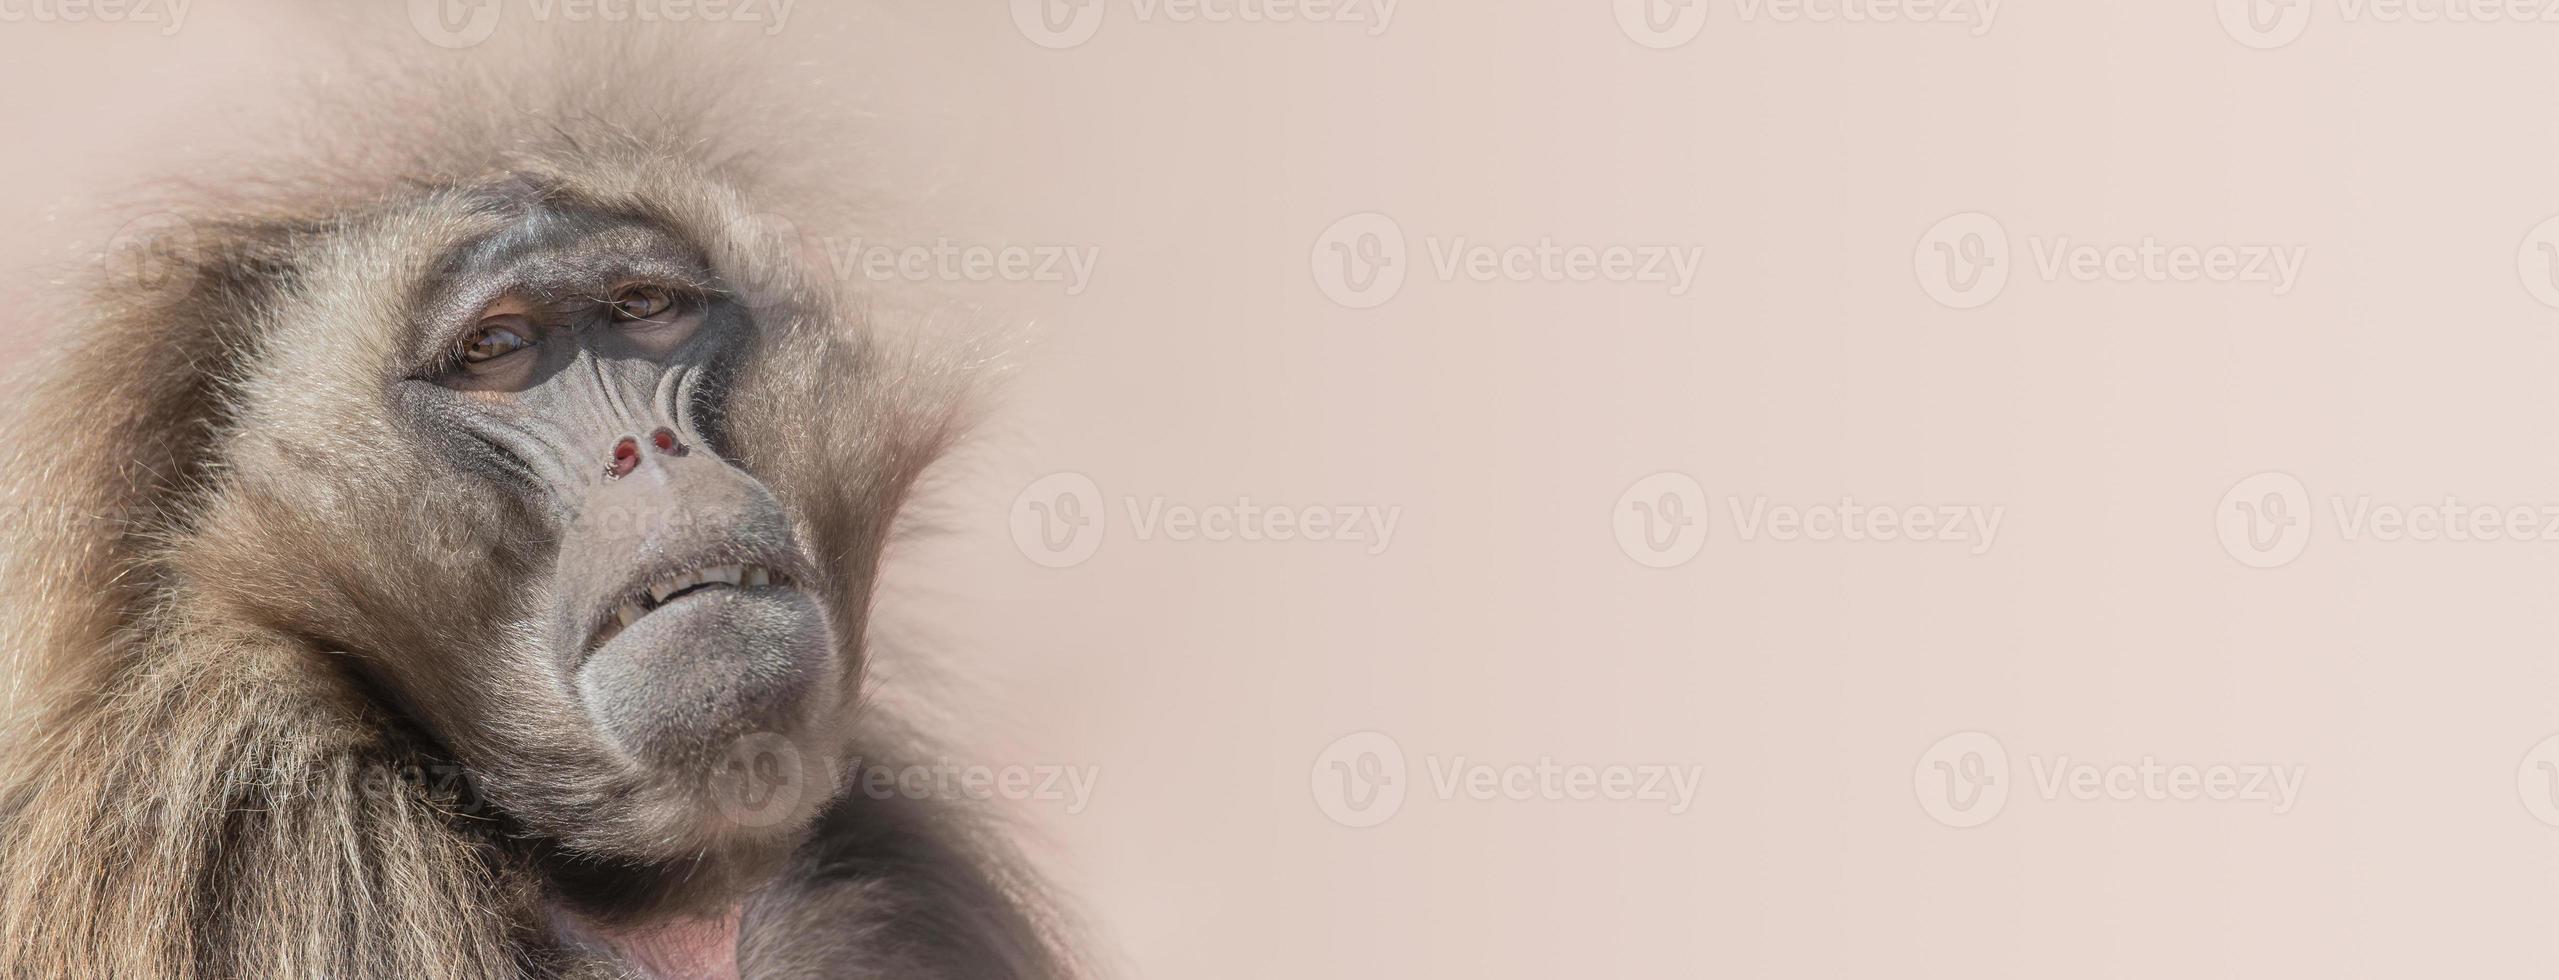 Retrato de babuino africano deprimido en fondo liso foto